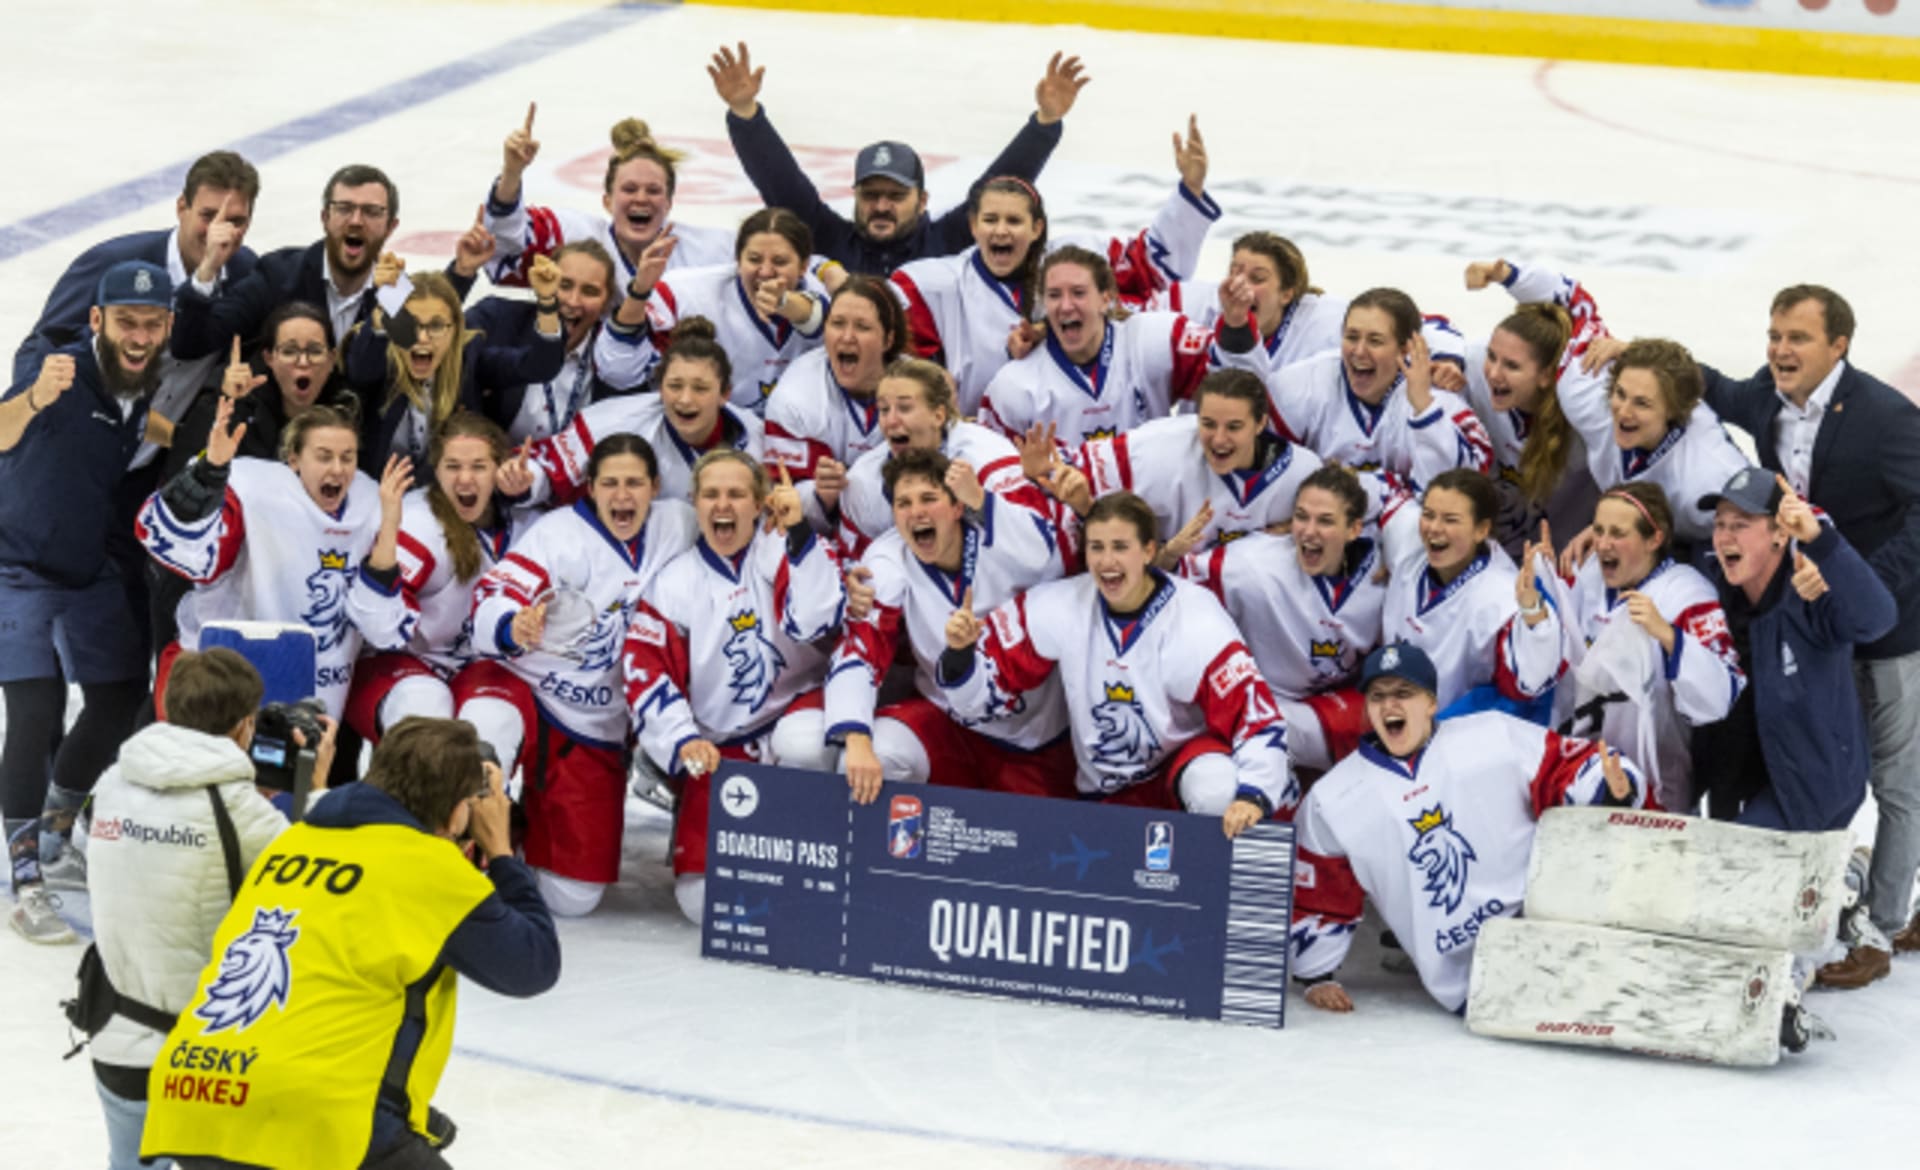 České hokejistky se radují z kvalifikace na olympijský turnaj, které dosáhly díky třem výhrám na turnaji v Chomutově.